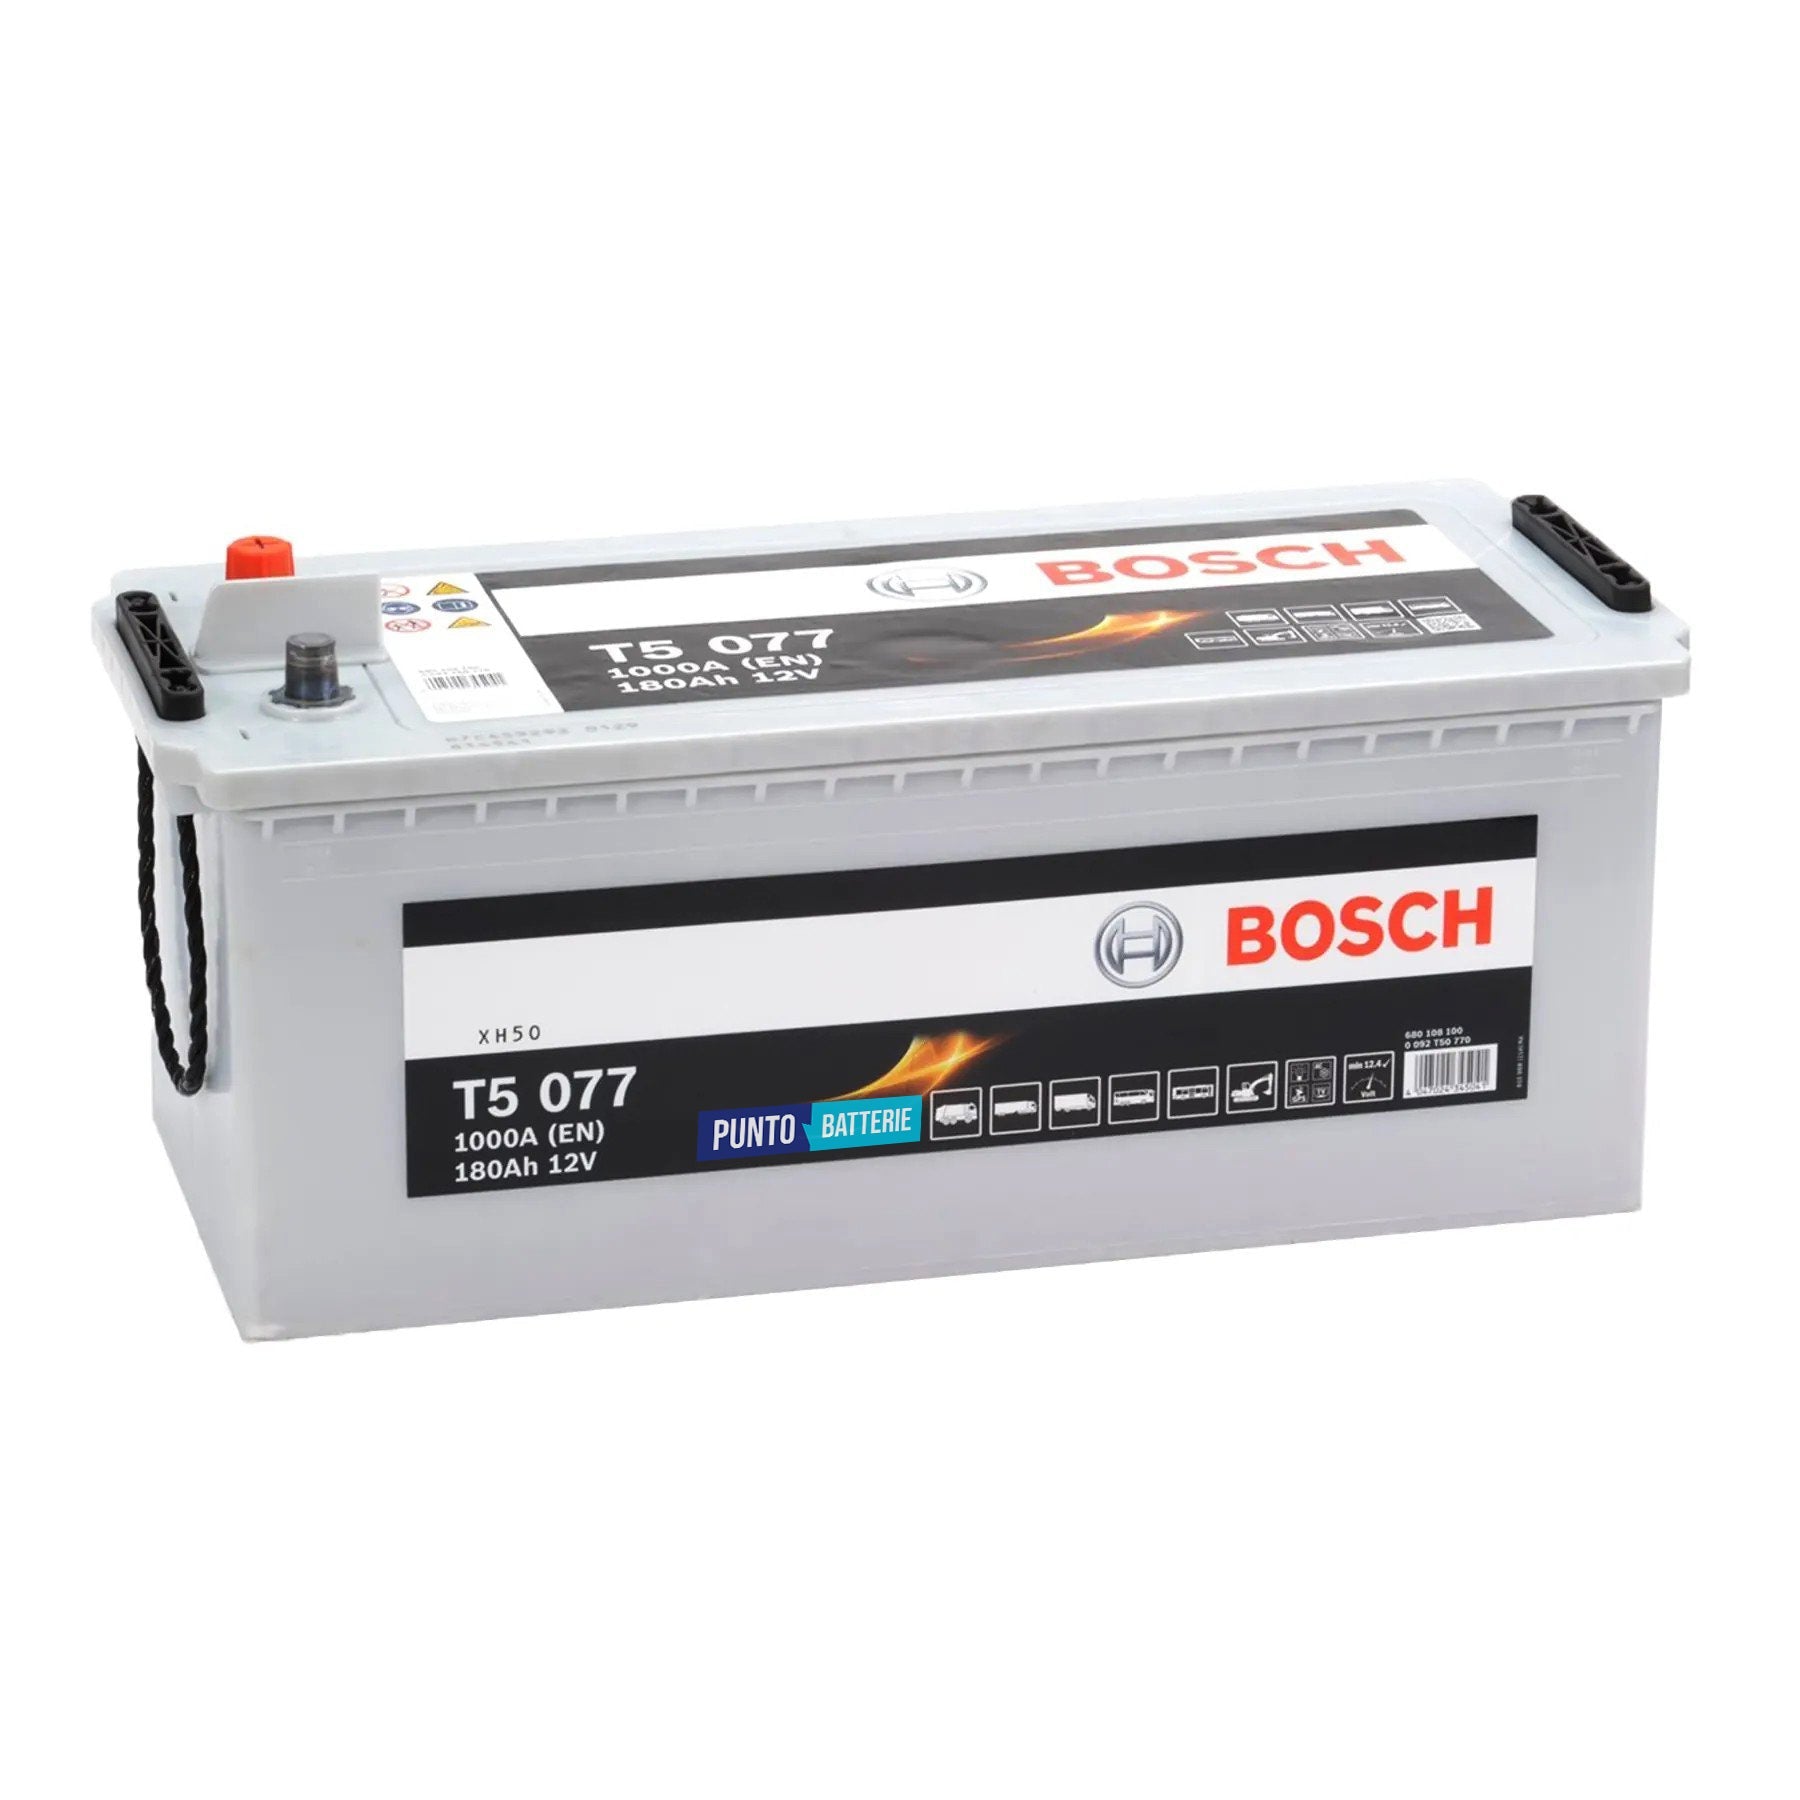 Batteria originale Bosch T5 T5077, dimensioni 513 x 223 x 223, polo positivo a sinistra, 12 volt, 180 amperora, 1000 ampere. Batteria per camion e veicoli pesanti.